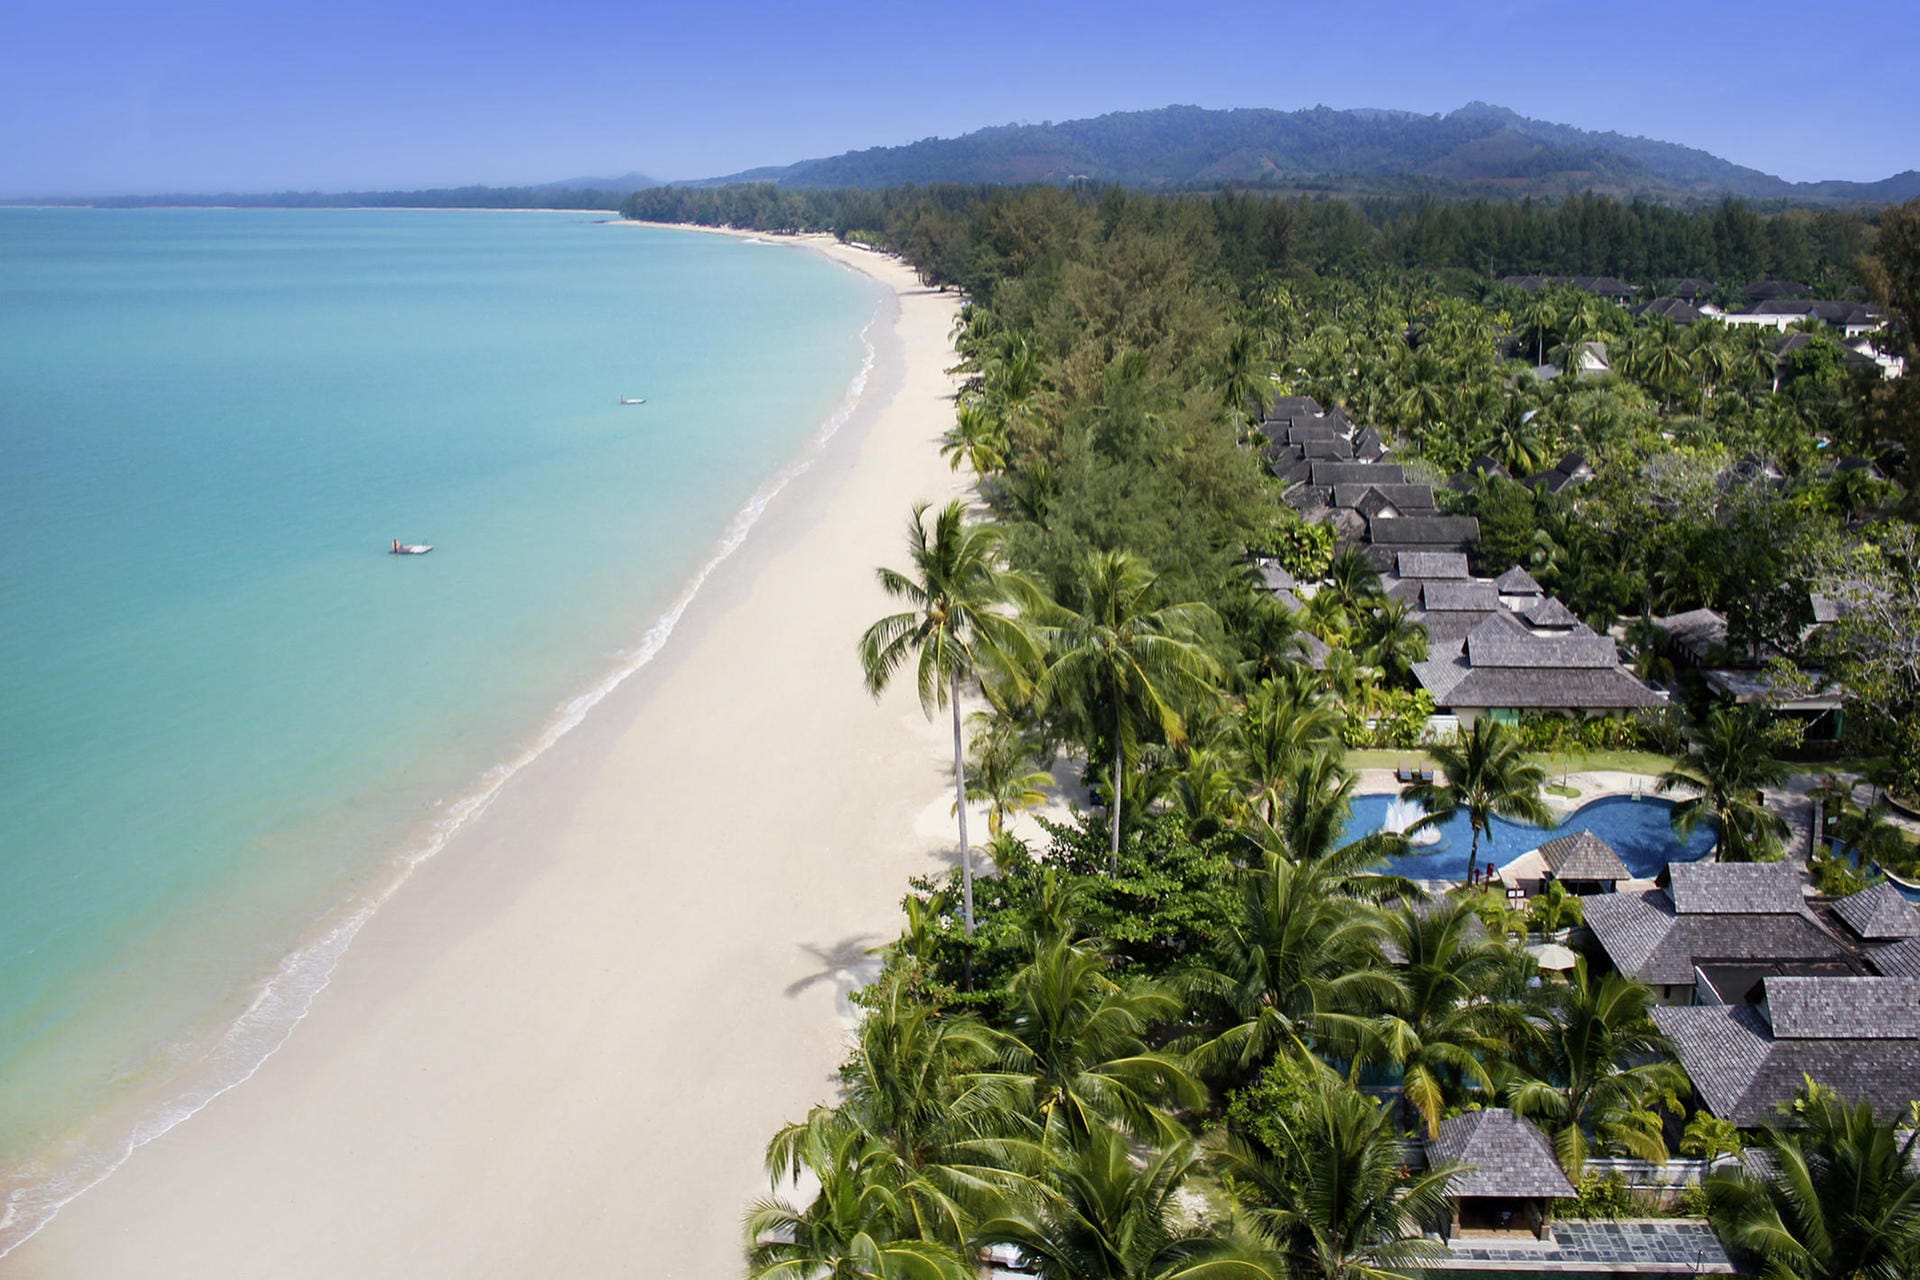 Der neue Robinson Club Khaon Lak in Thailand punktet mit seinen geräumigen Villen und direkter Strandlage.